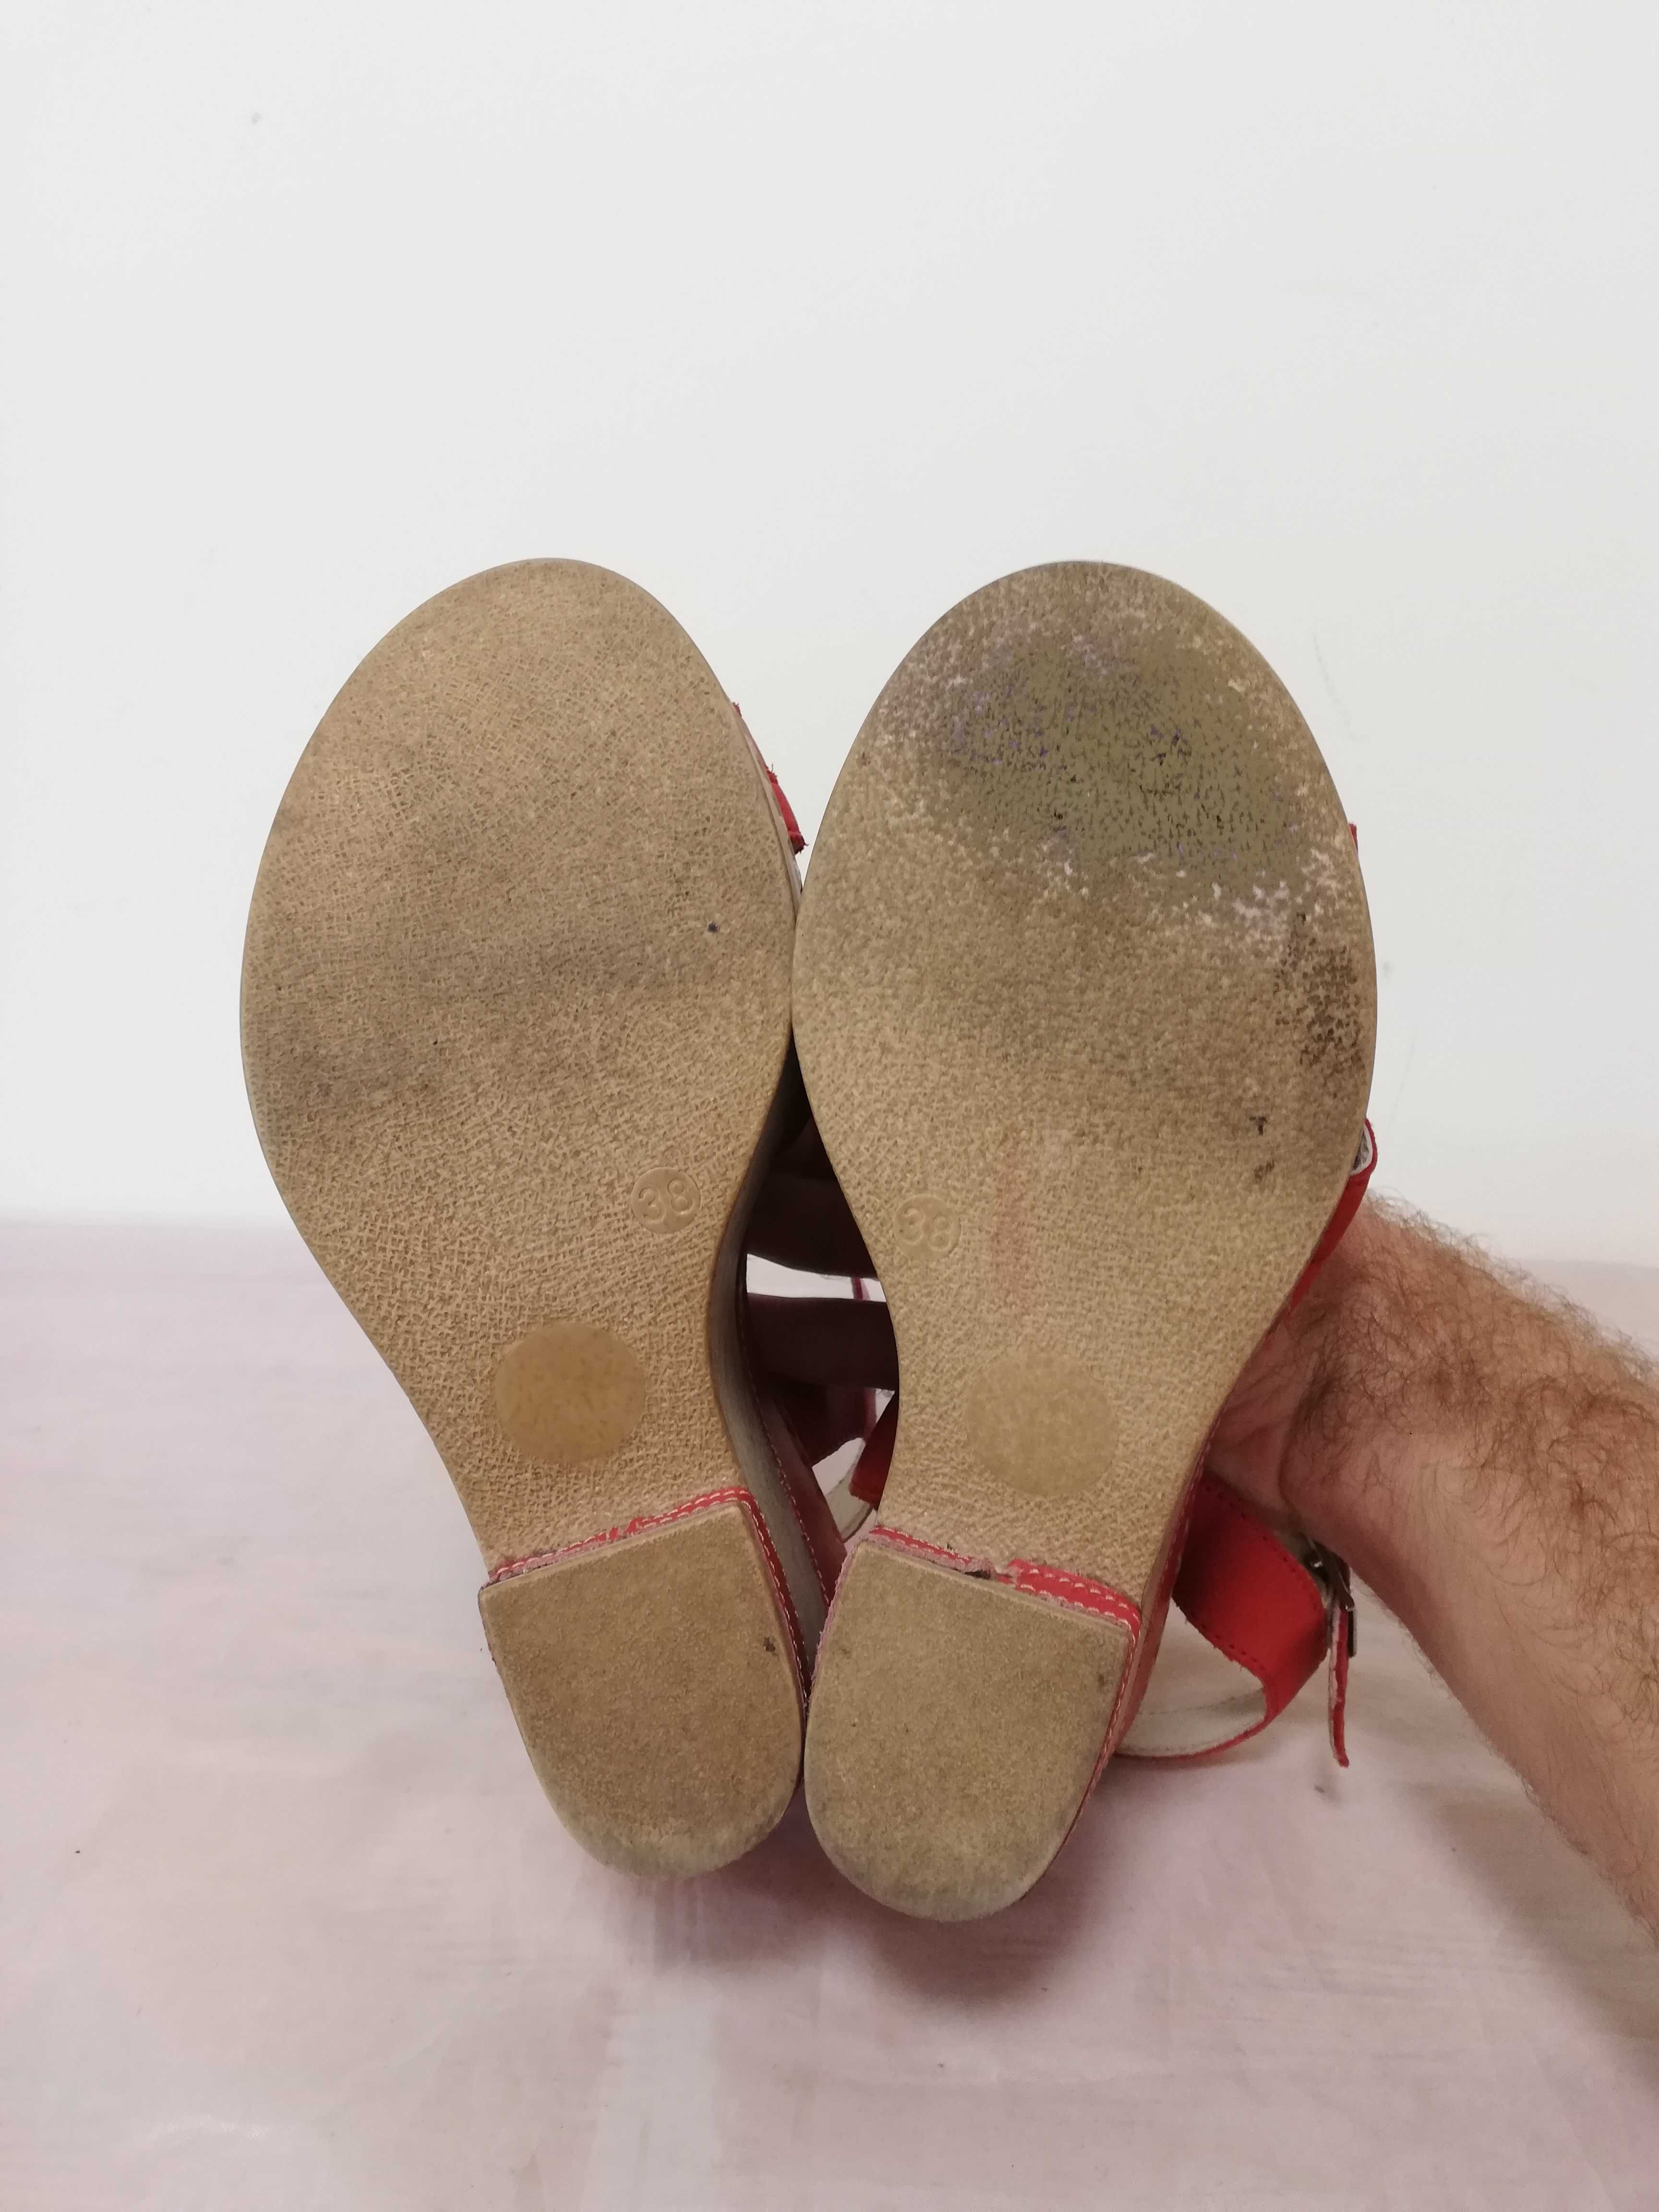 Buty koturny skórzane Lasocki r. 38 , wkł 25 cm